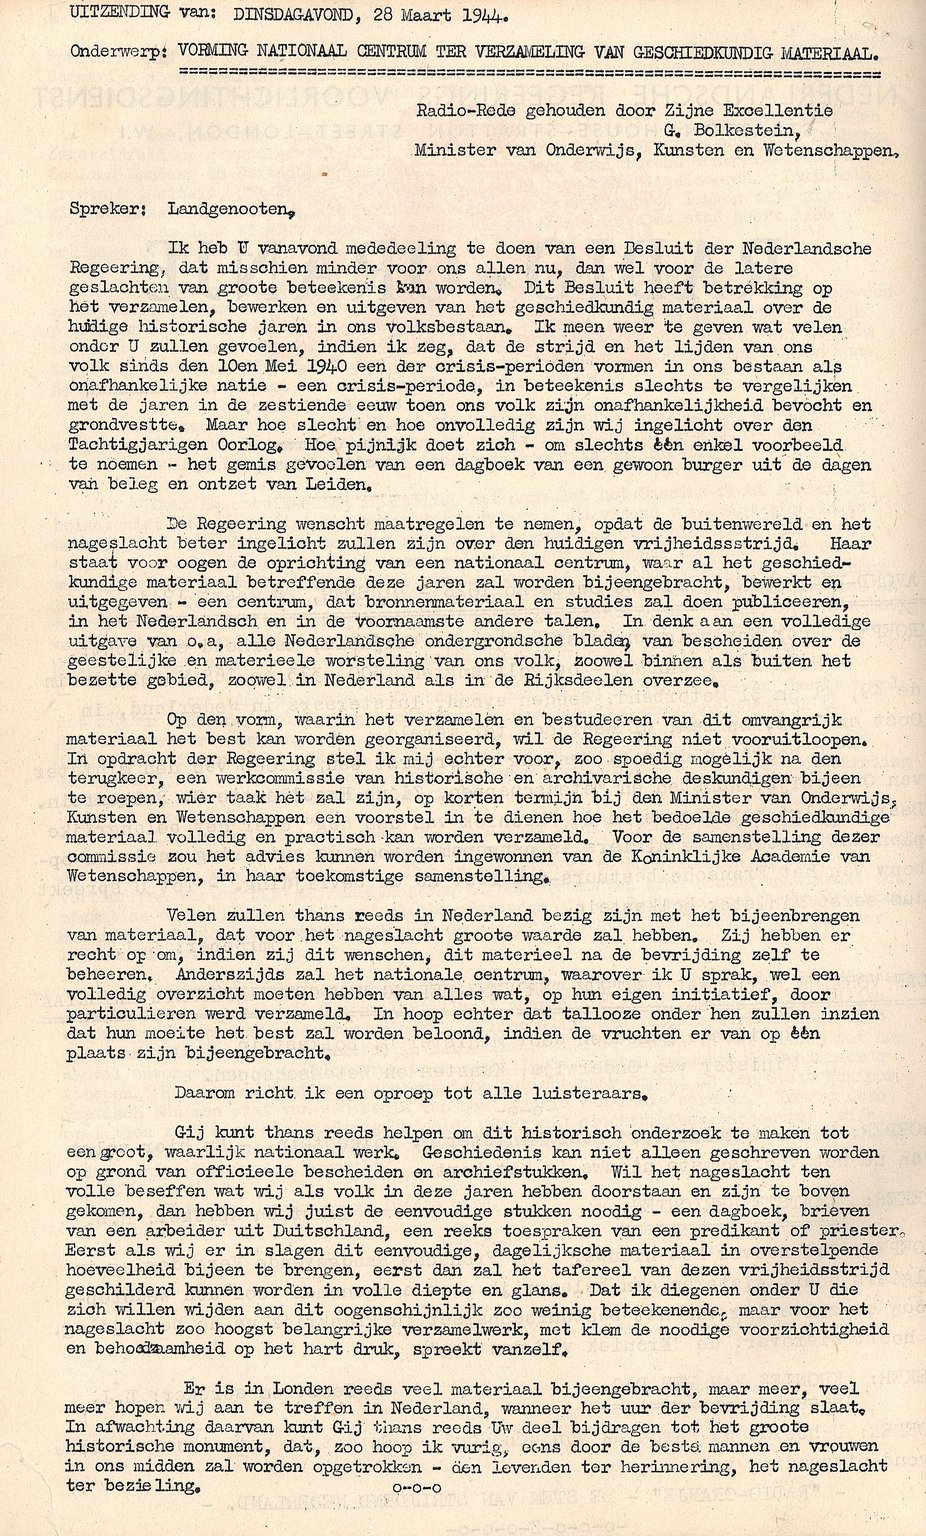 De speech van minister Gerrit Bolkestein met de oproep aan Nederlanders om persoonlijke documenten uit de oorlog te bewaren (28 maart 1944).